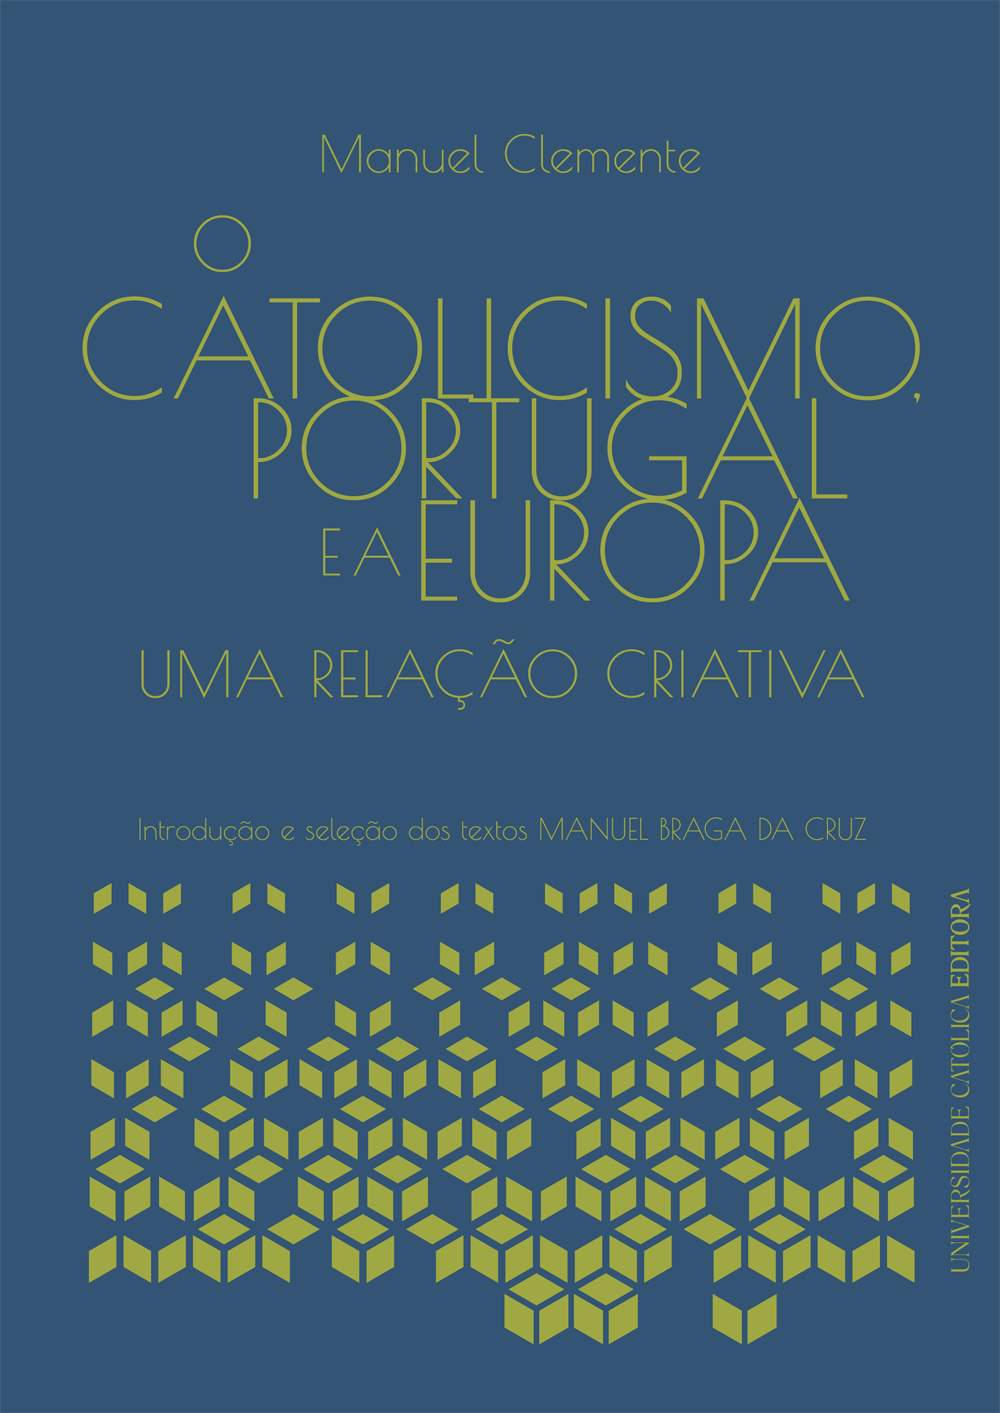 O CATOLICISMO, PORTUGAL E A EUROPA - Uma relação criativa